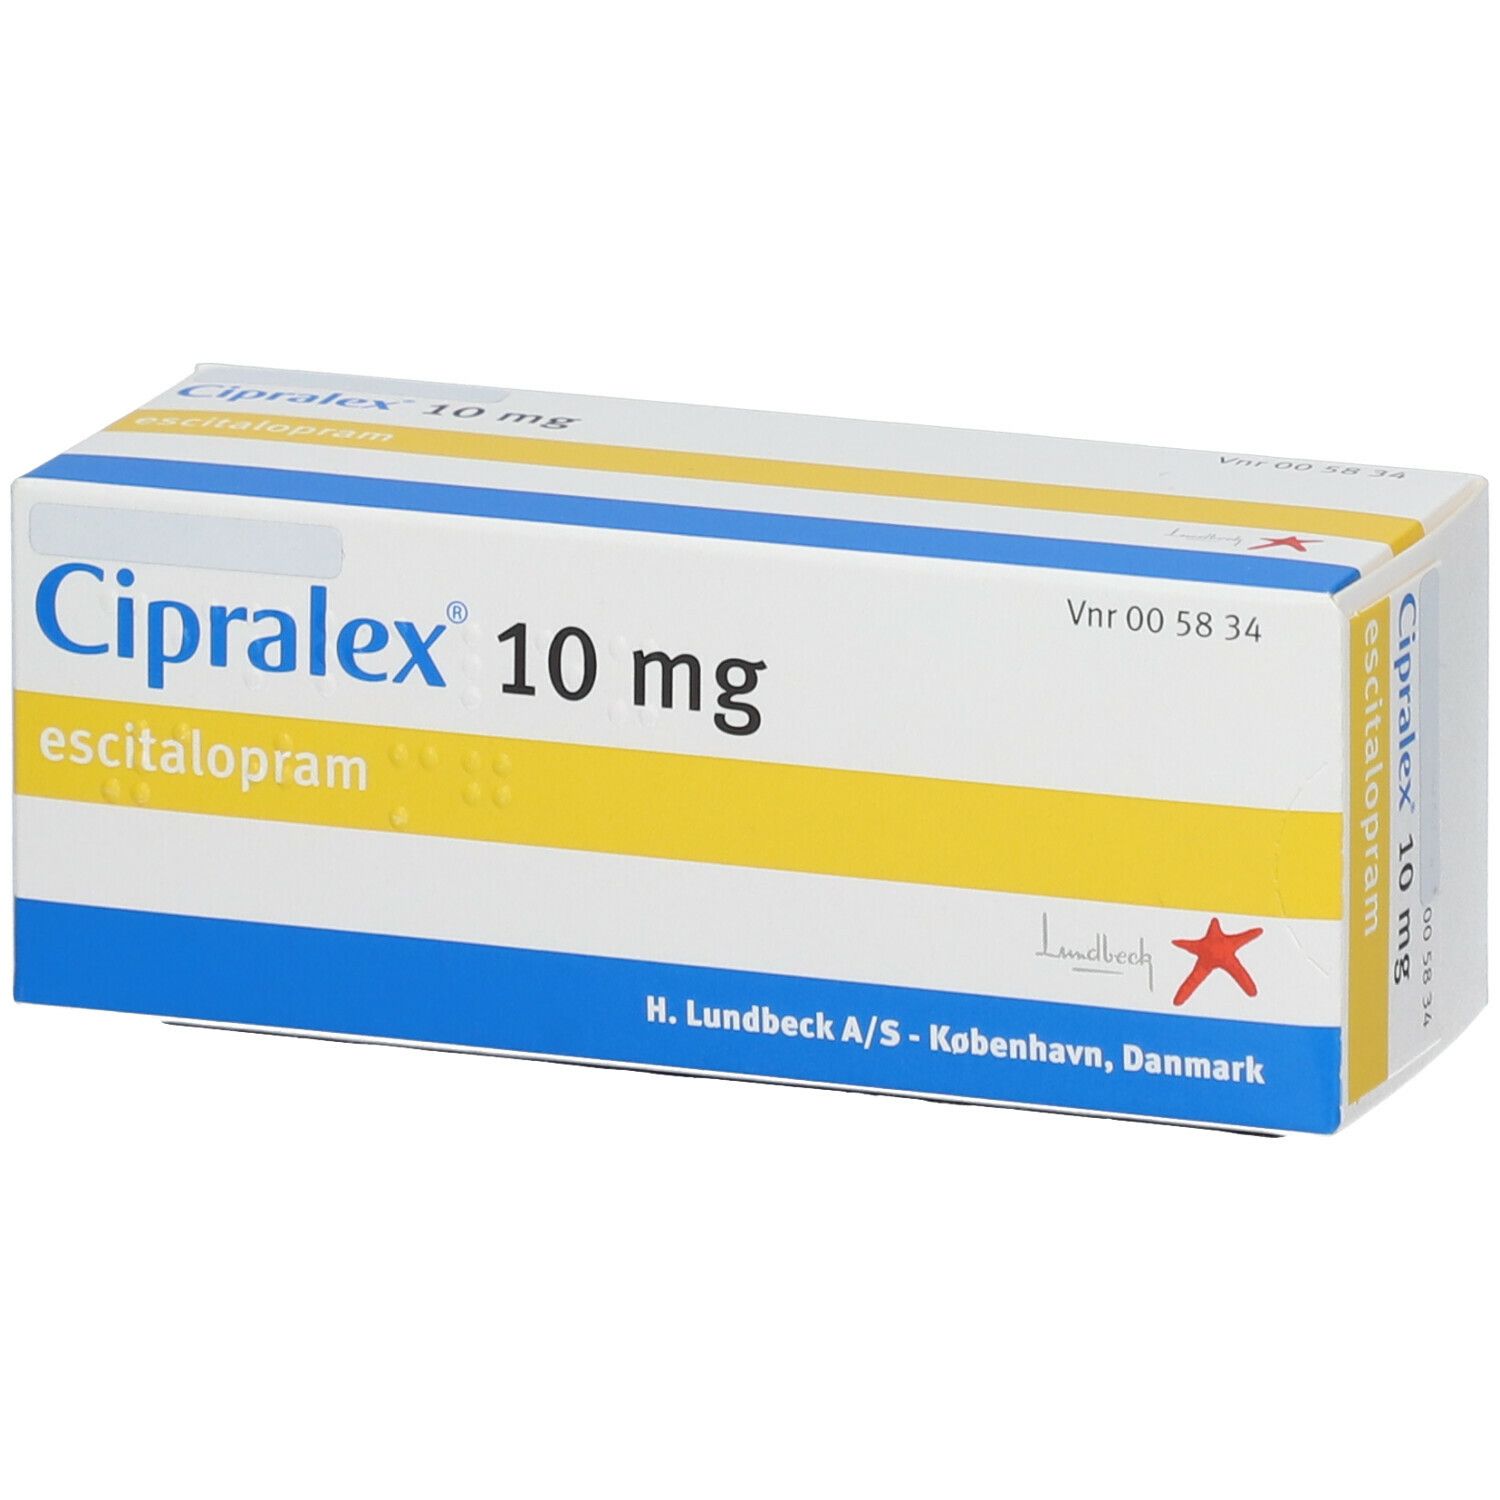 سيبرالكس عيار 10 مجم للحصول على فوائد دواء cipralex لسرعة القذف